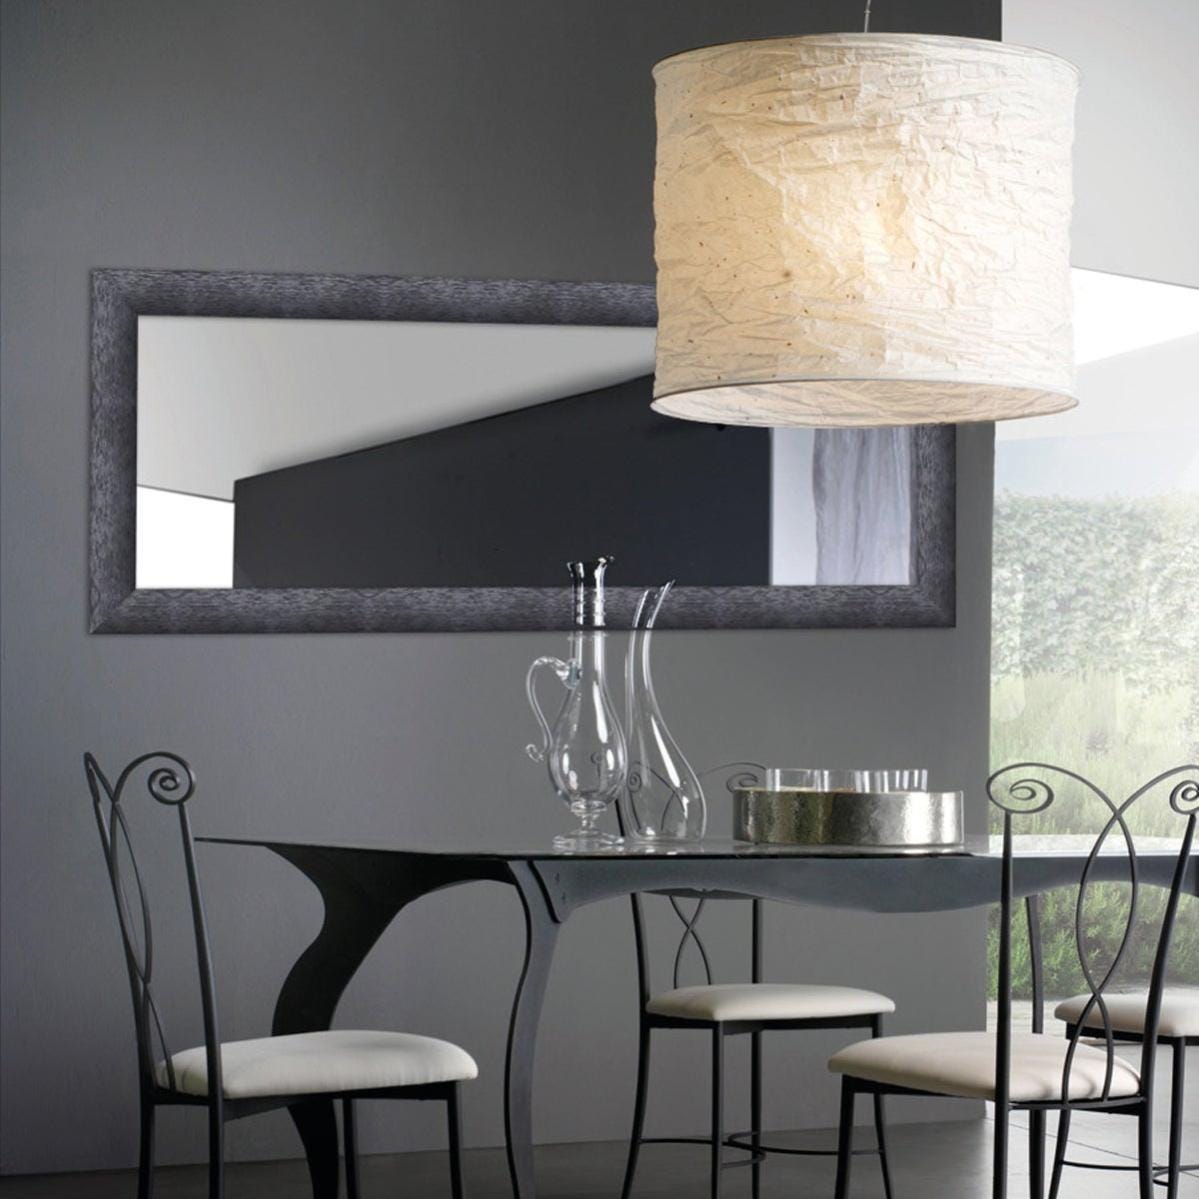 Specchio rettangolare da parete illuminato, specchiera con LED con cornice  profonda nera, specchio nero luminoso e moderno con cornice, 100x75x13 cm